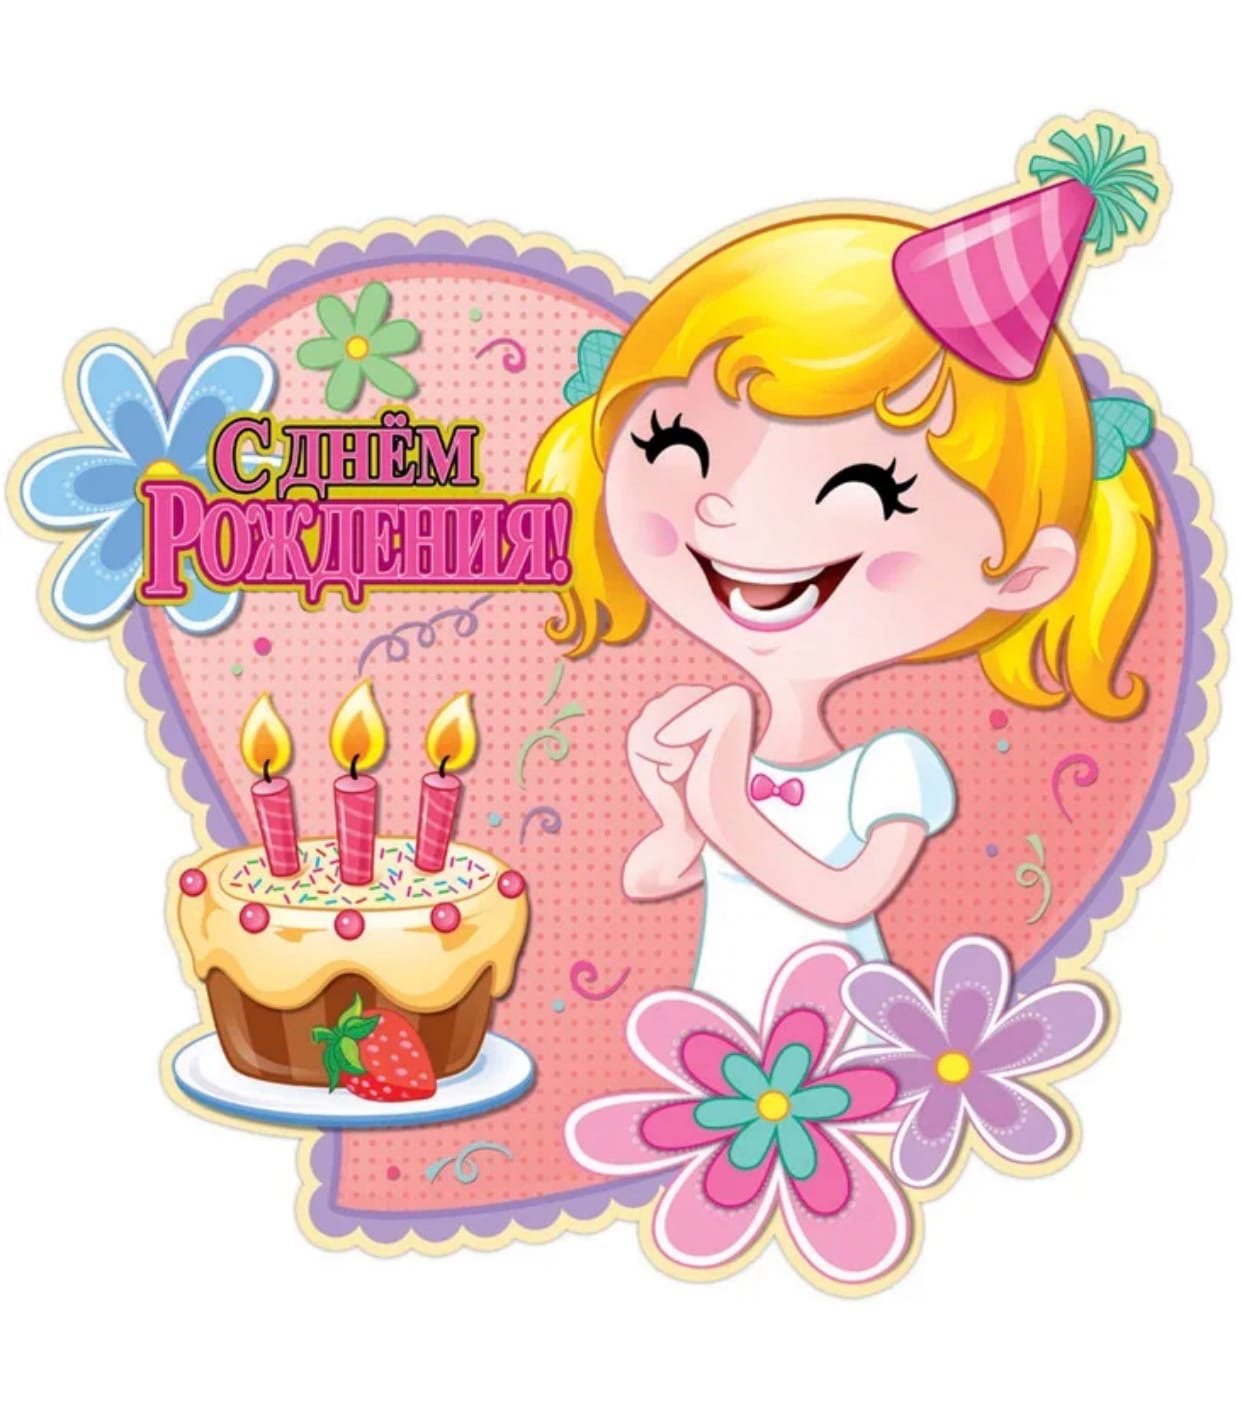 Поздравить с днем рождения девочку 6. М днём рождения девочке. ЧС днем рождения девочке. С днем рождениядеврчке. С днём рождения деыочке.